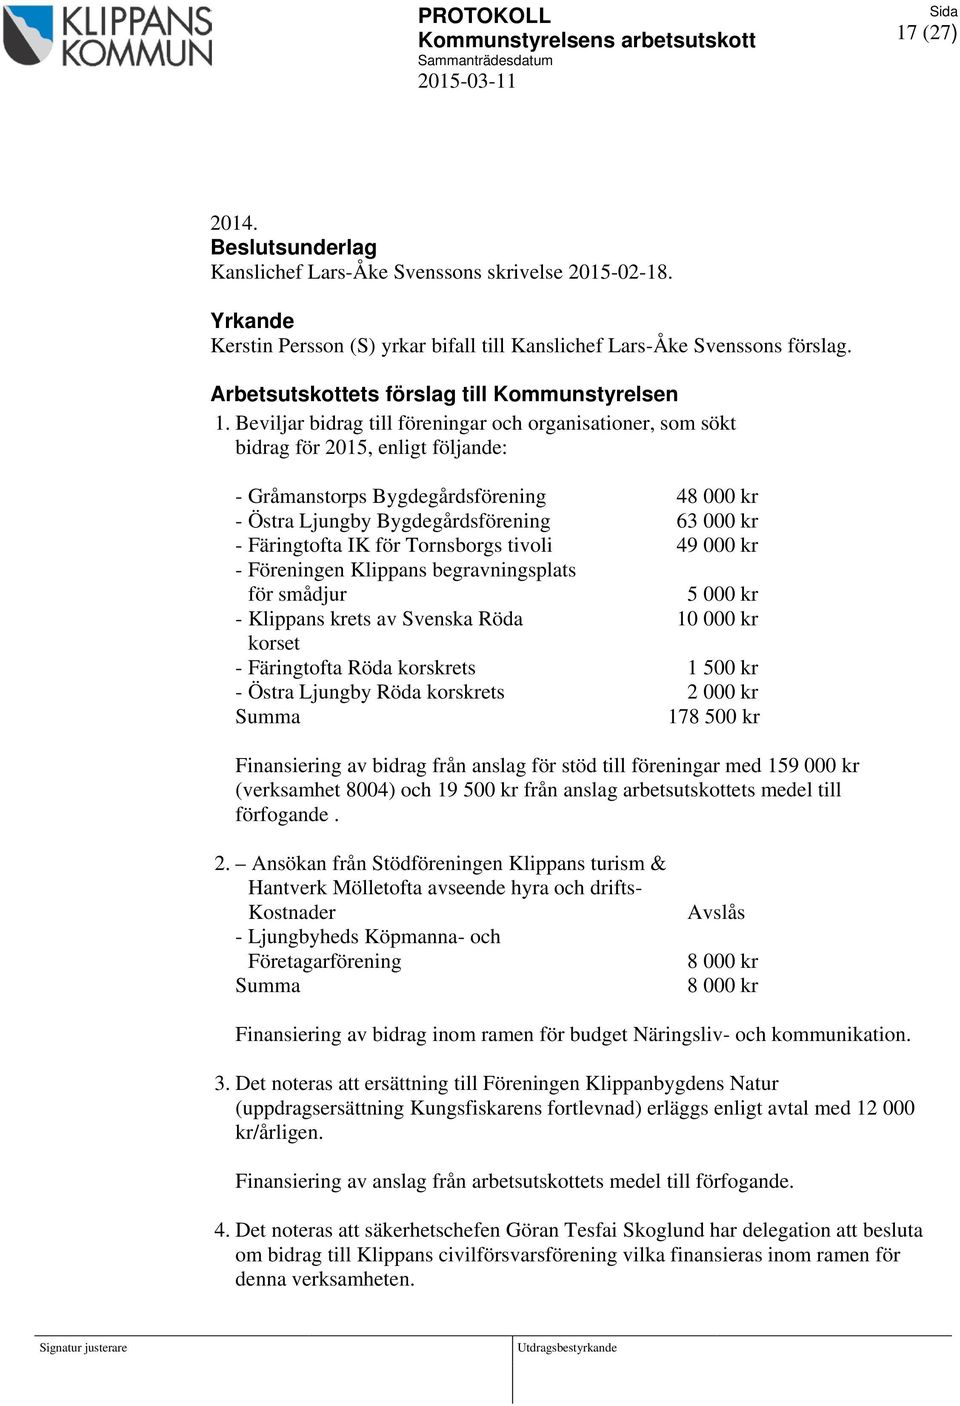 Beviljar bidrag till föreningar och organisationer, som sökt bidrag för 2015, enligt följande: - Gråmanstorps Bygdegårdsförening 48 000 kr - Östra Ljungby Bygdegårdsförening 63 000 kr - Färingtofta